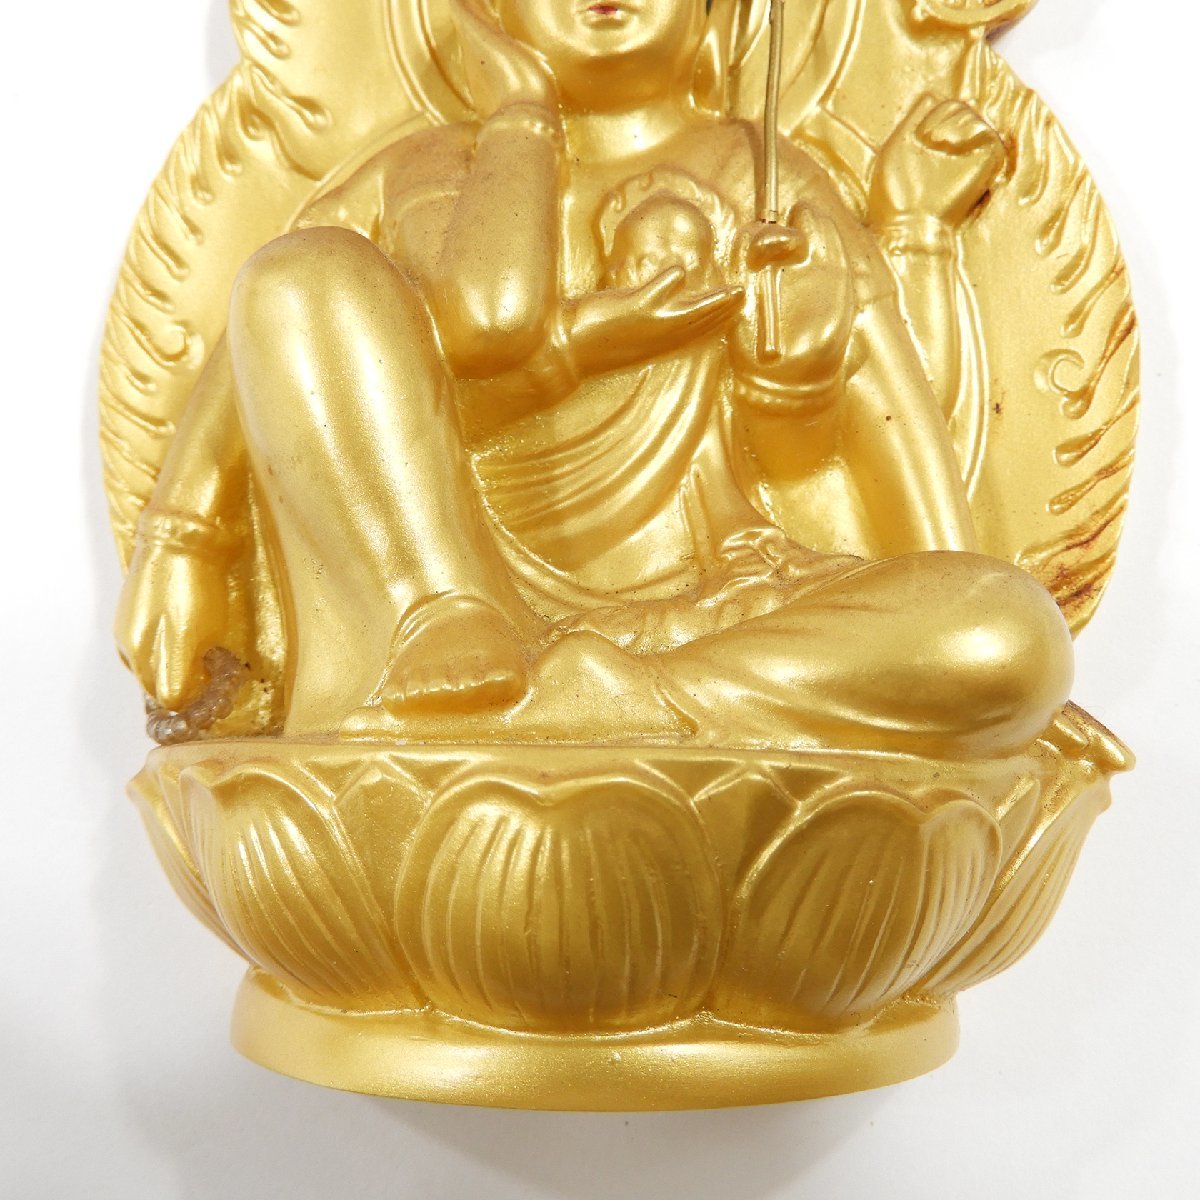 阿含宗 如意輪観音 #14388 仏具 仏教美術 年代物 昭和 レトロ 聖如意輪観自在菩薩御尊像_画像5